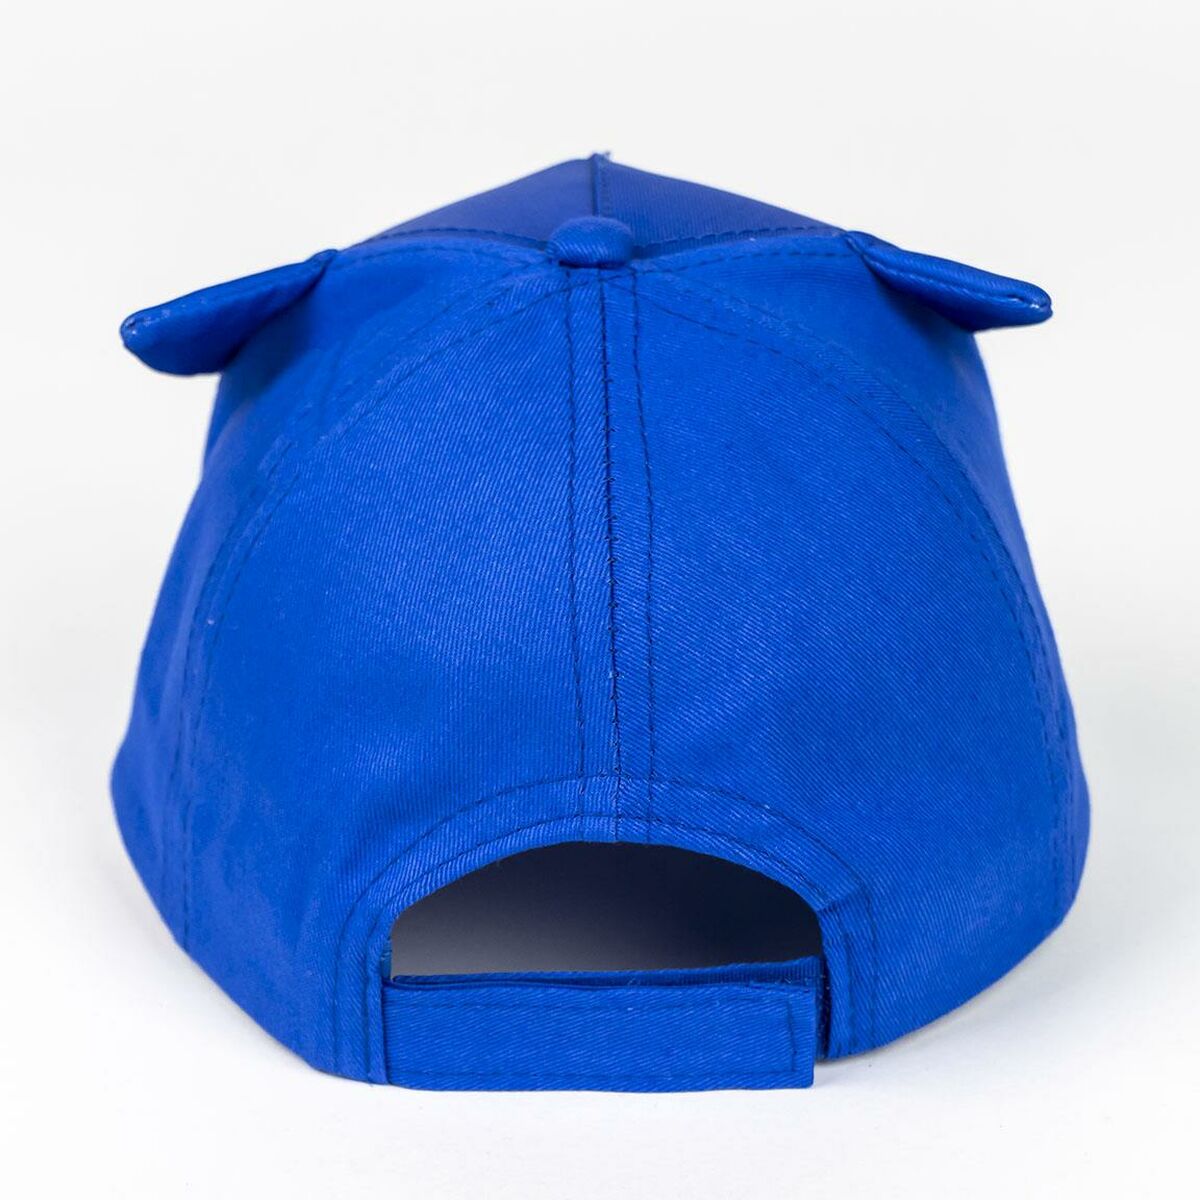 Cappellino per Bambini con Orecchie Sonic Azzurro